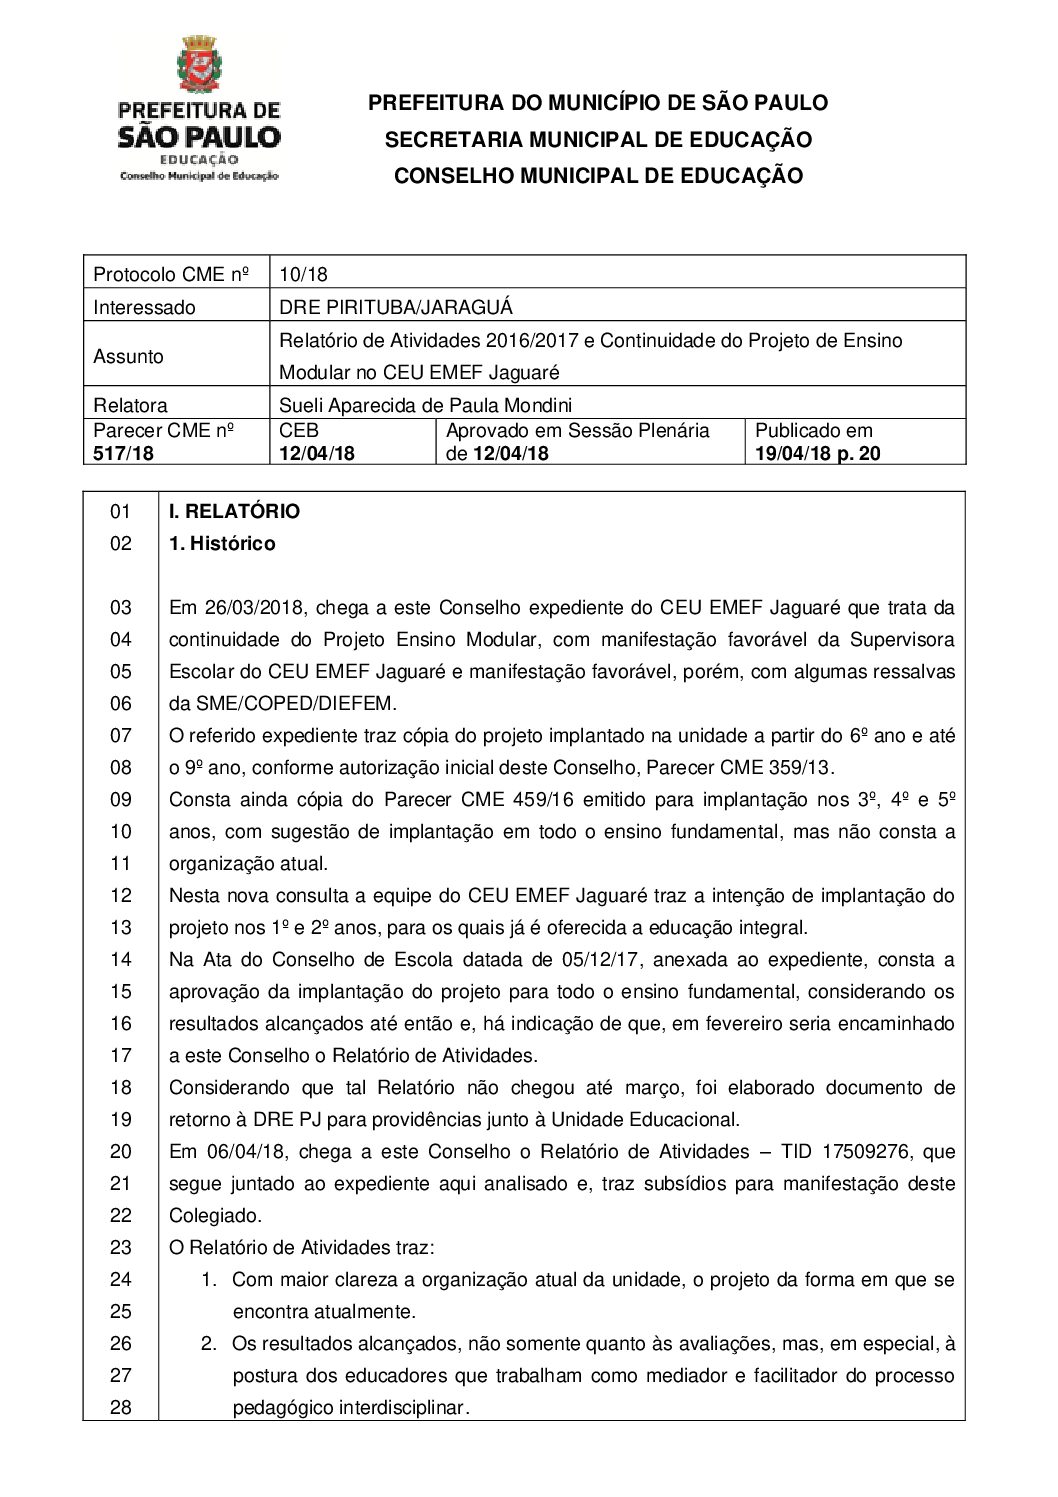 Parecer CME nº 517/2018 - CEU EMEF Jaguaré (DRE Pirituba/Jaraguá) - Relatório de Atividades 2016/2017 e Continuidade do Projeto de Ensino Modular 